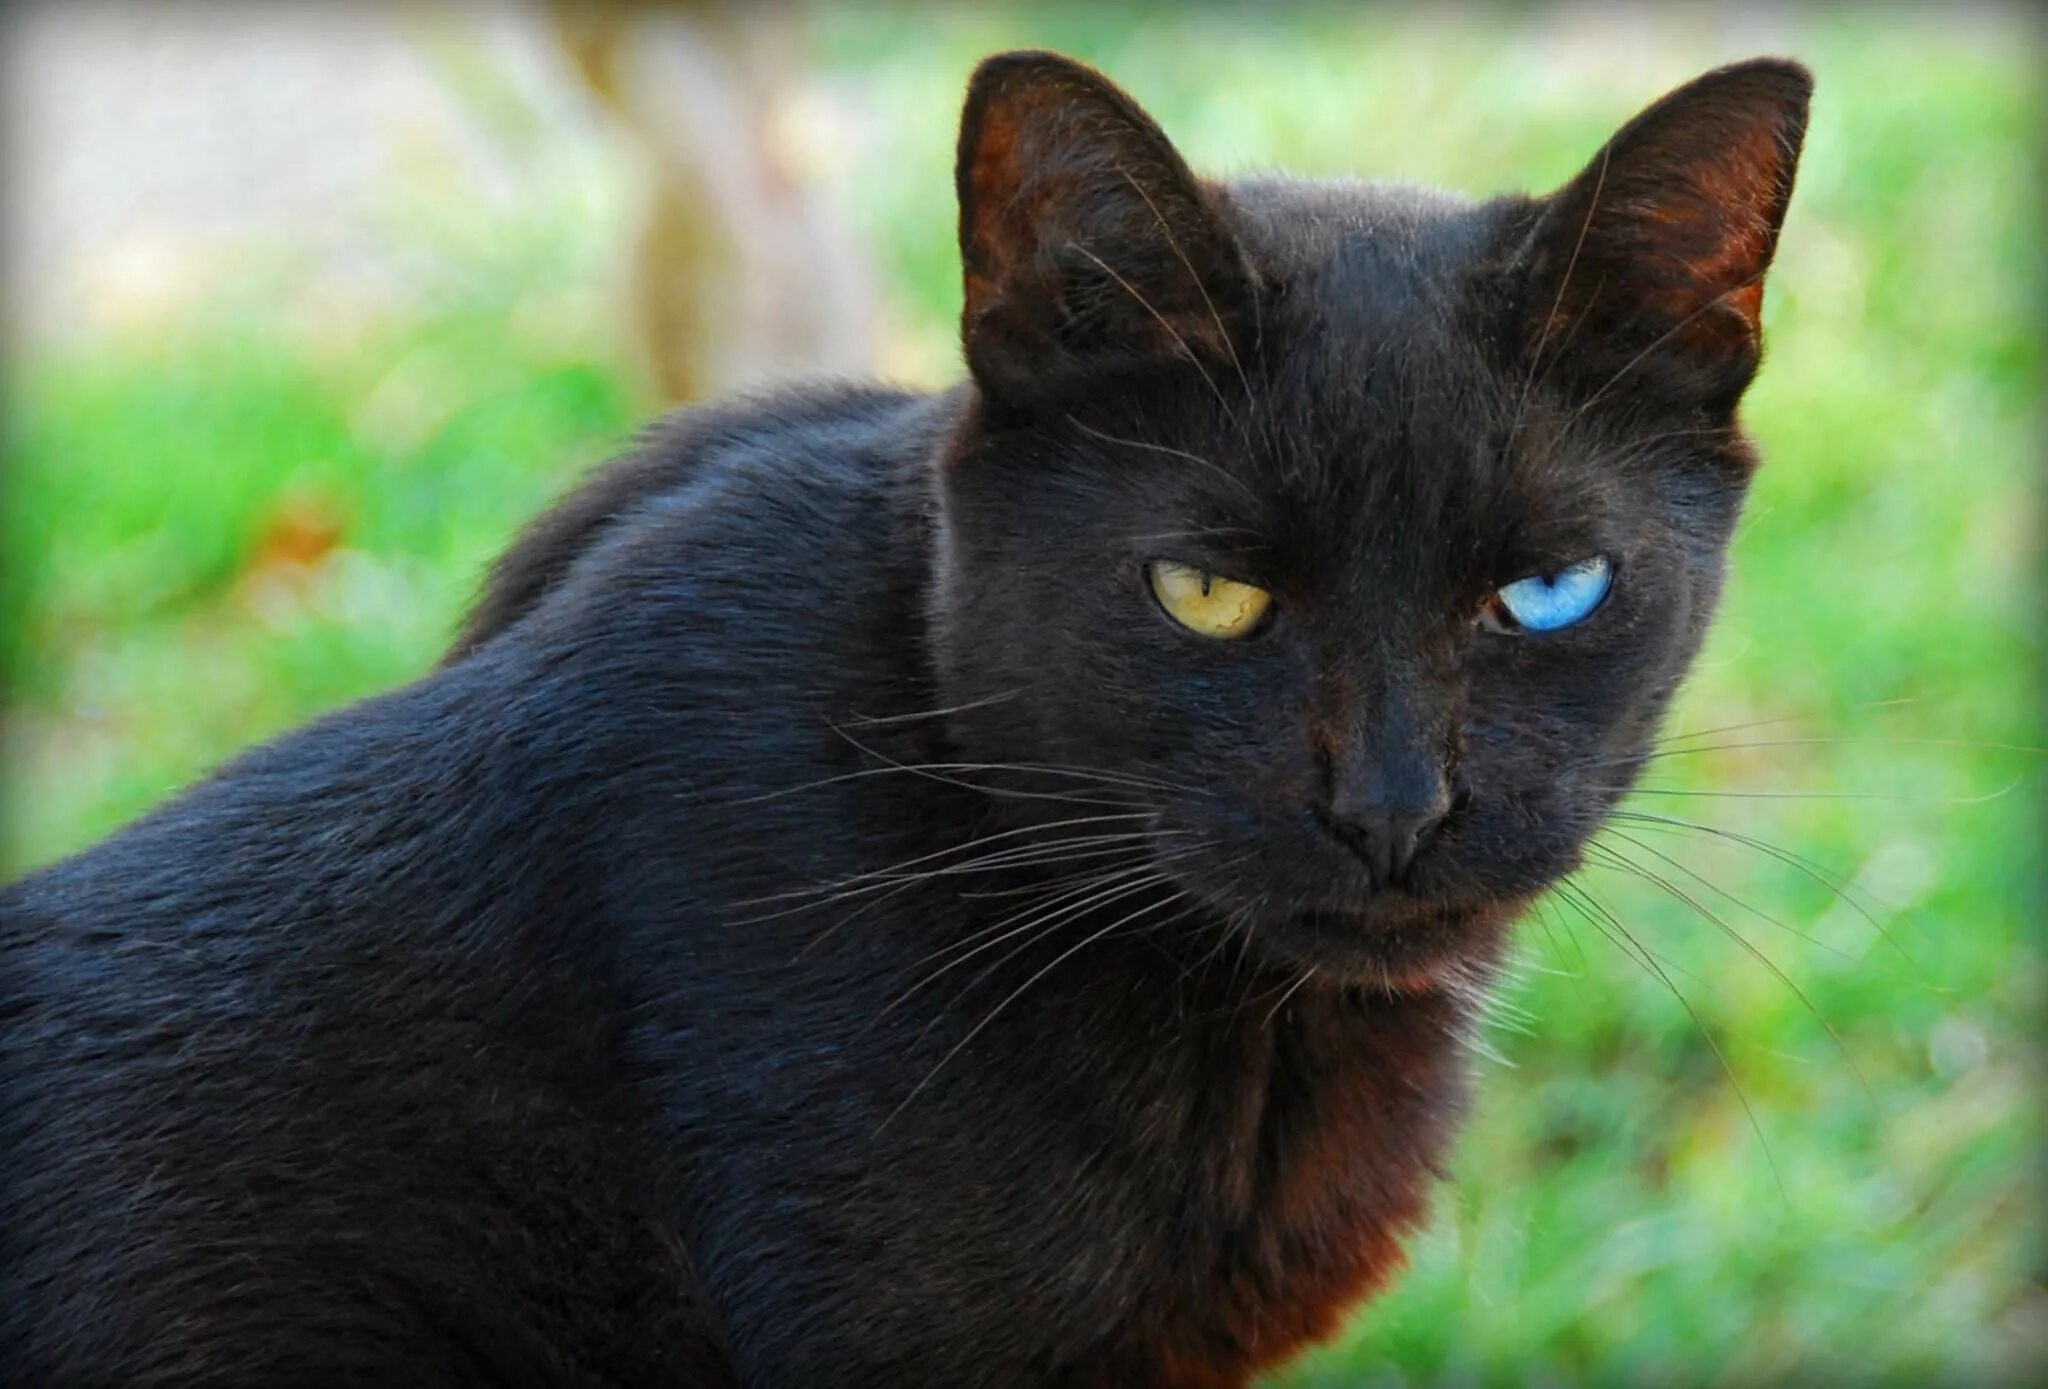 Black cat eye. Бомбейская кошка. Чёрная кошка порода Бомбейская. Черная Бомбейская кошка с зелеными глазами. Бомбейская кошка длинношерстная.